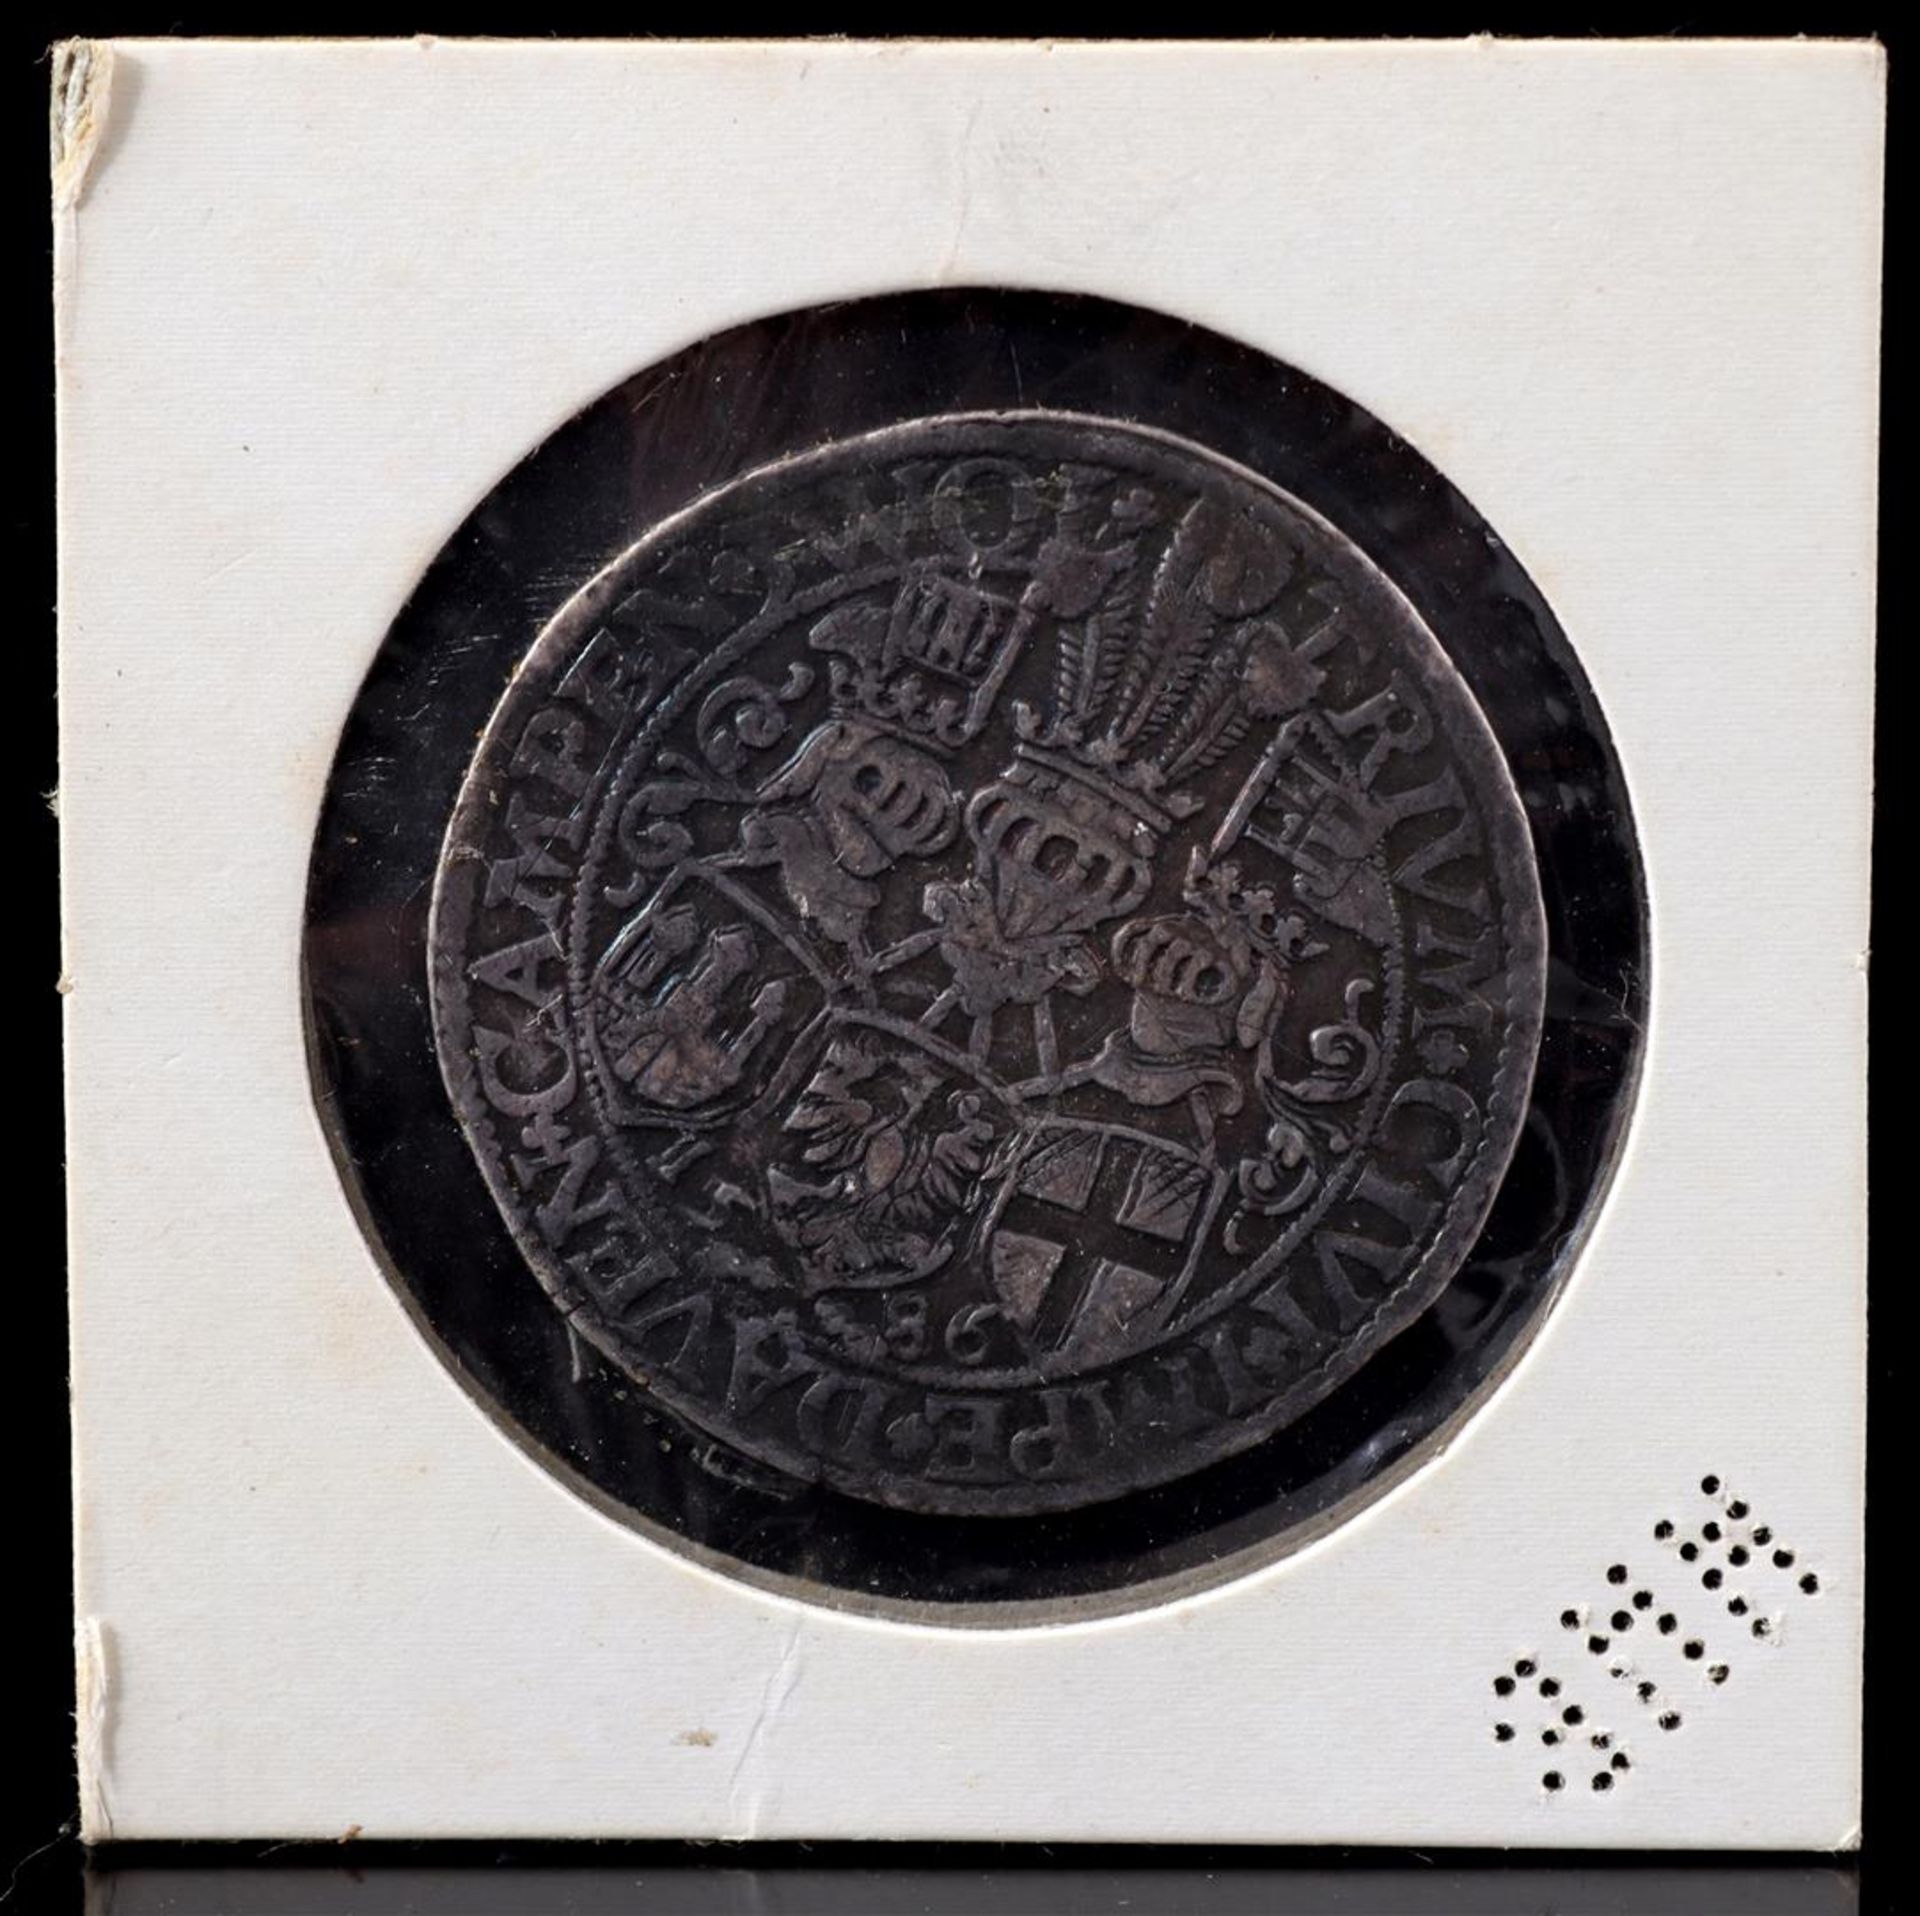 Silver Arendsrijksdaalder coin,1586 - Bild 2 aus 2